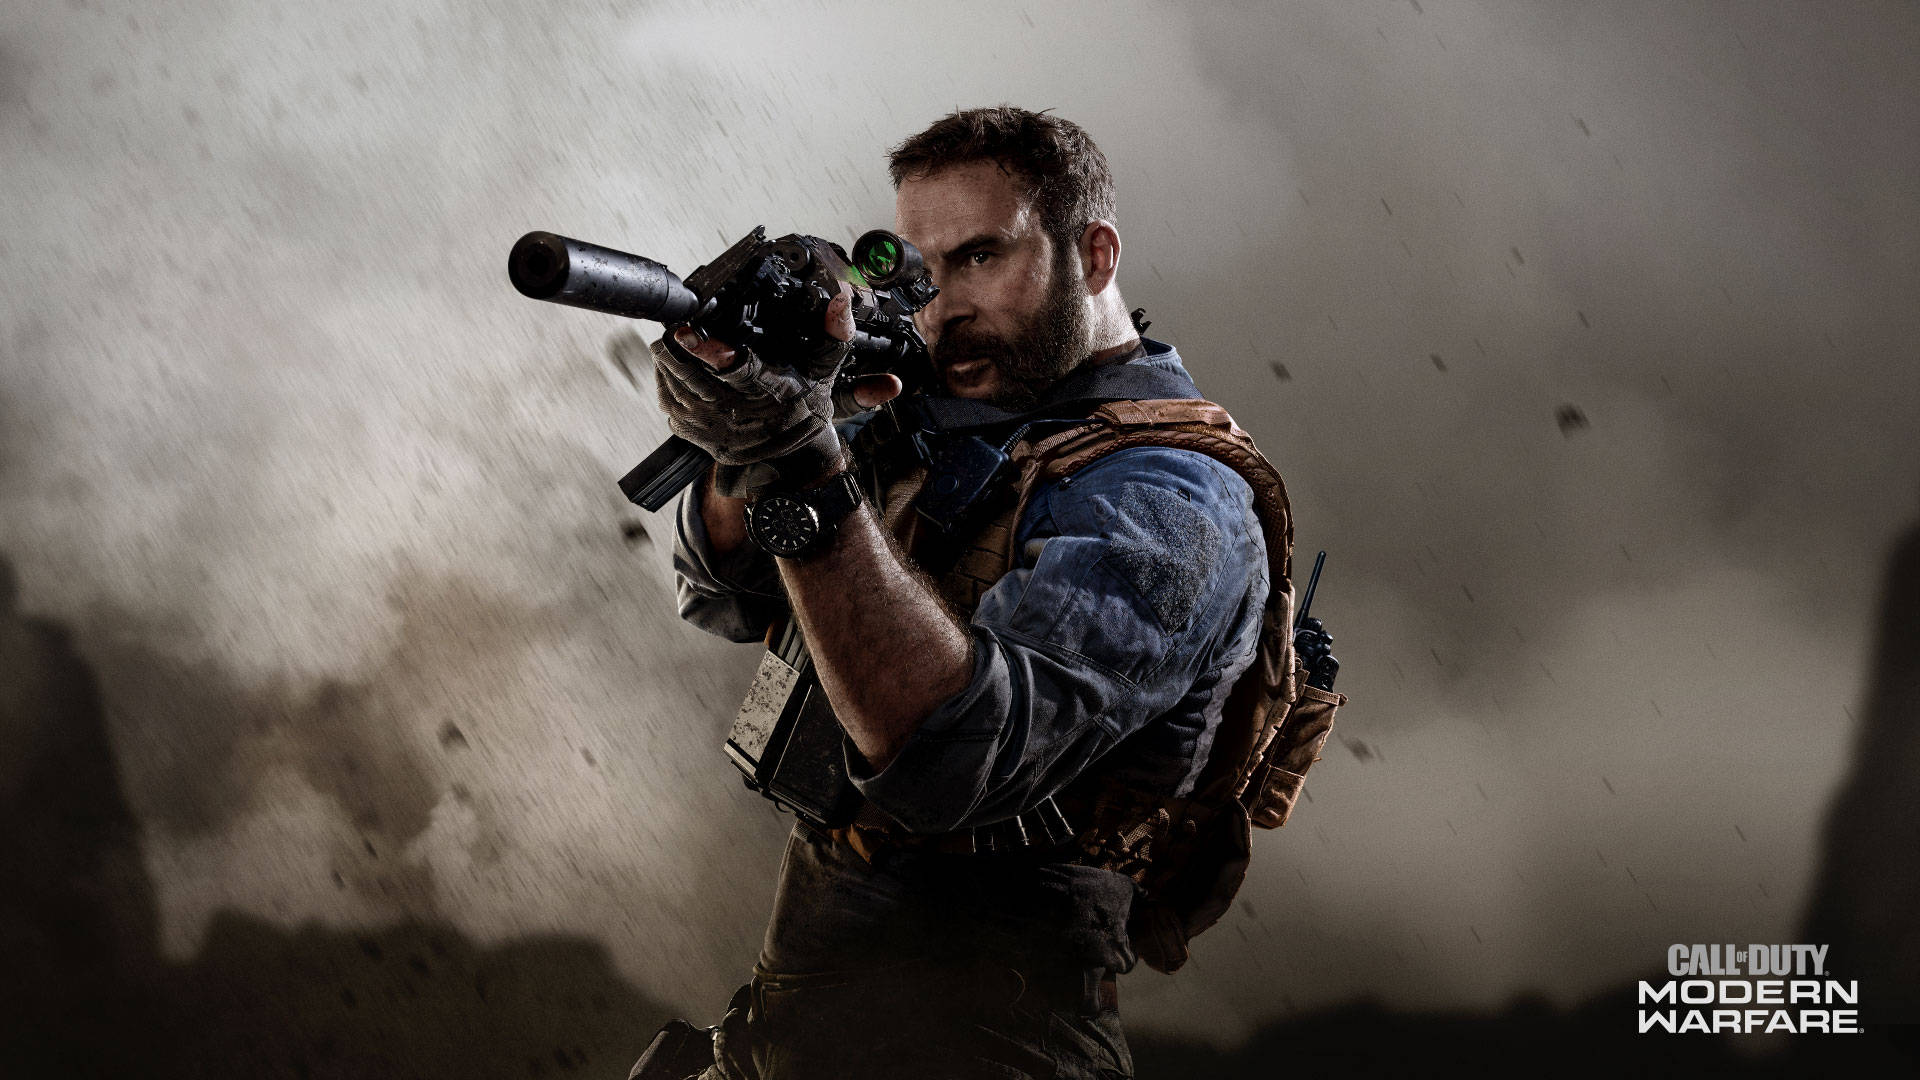 Tretensie In Einem Ultimativen First-person-shooter-erlebnis Mit Call Of Duty: Mw 2019 Gegeneinander An. Wallpaper